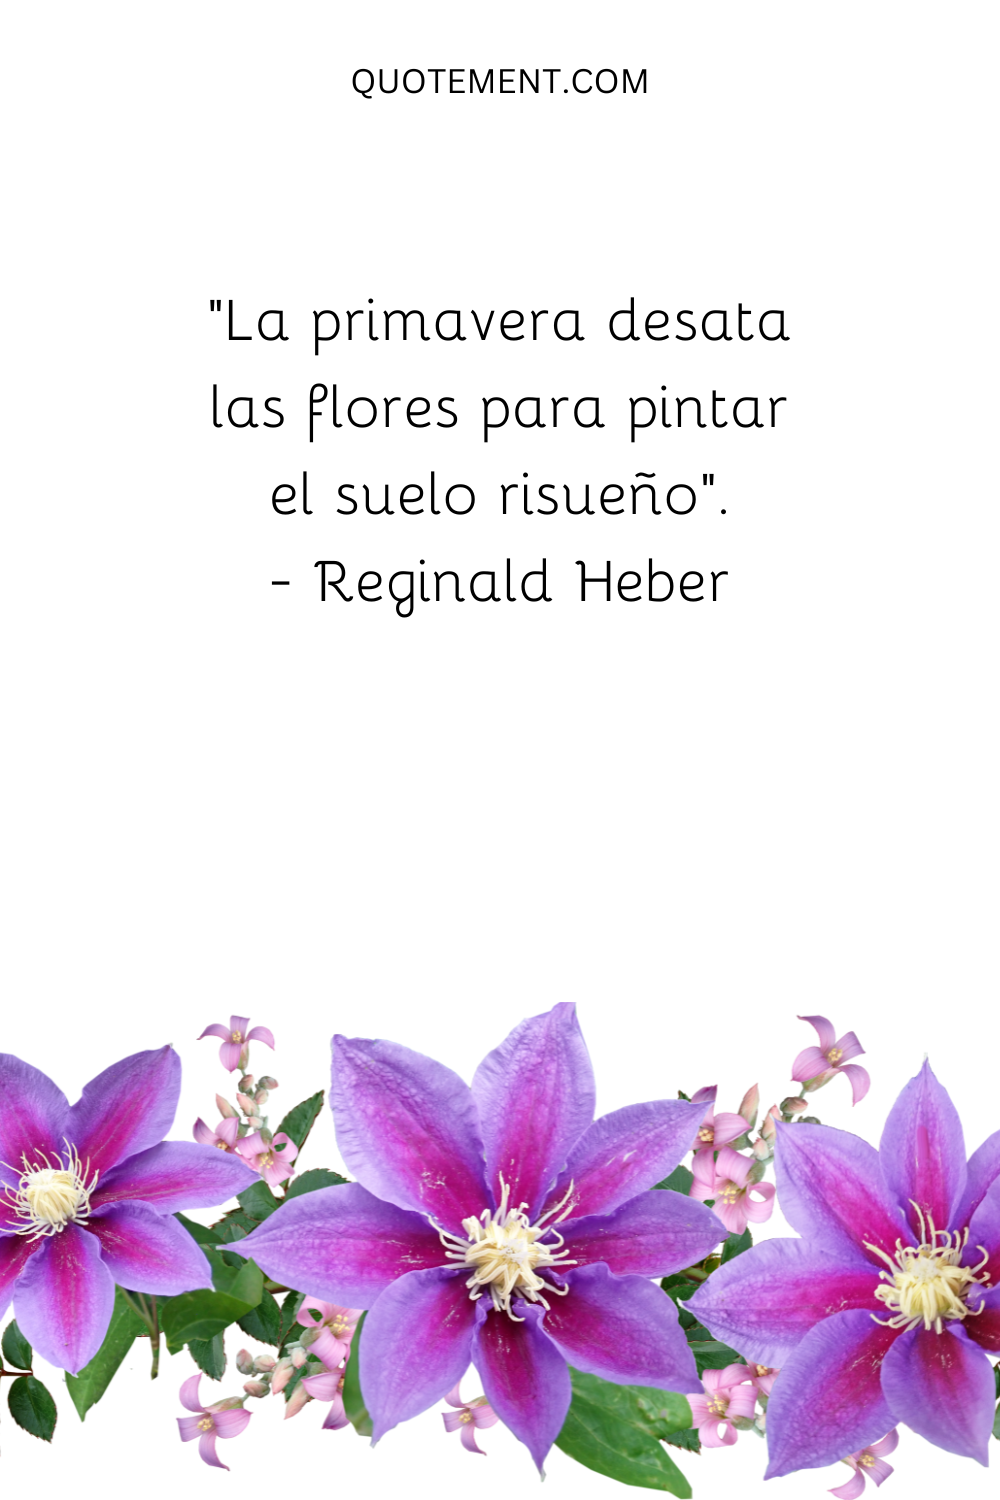 "La primavera desata las flores para pintar el suelo risueño". - Reginald Heber